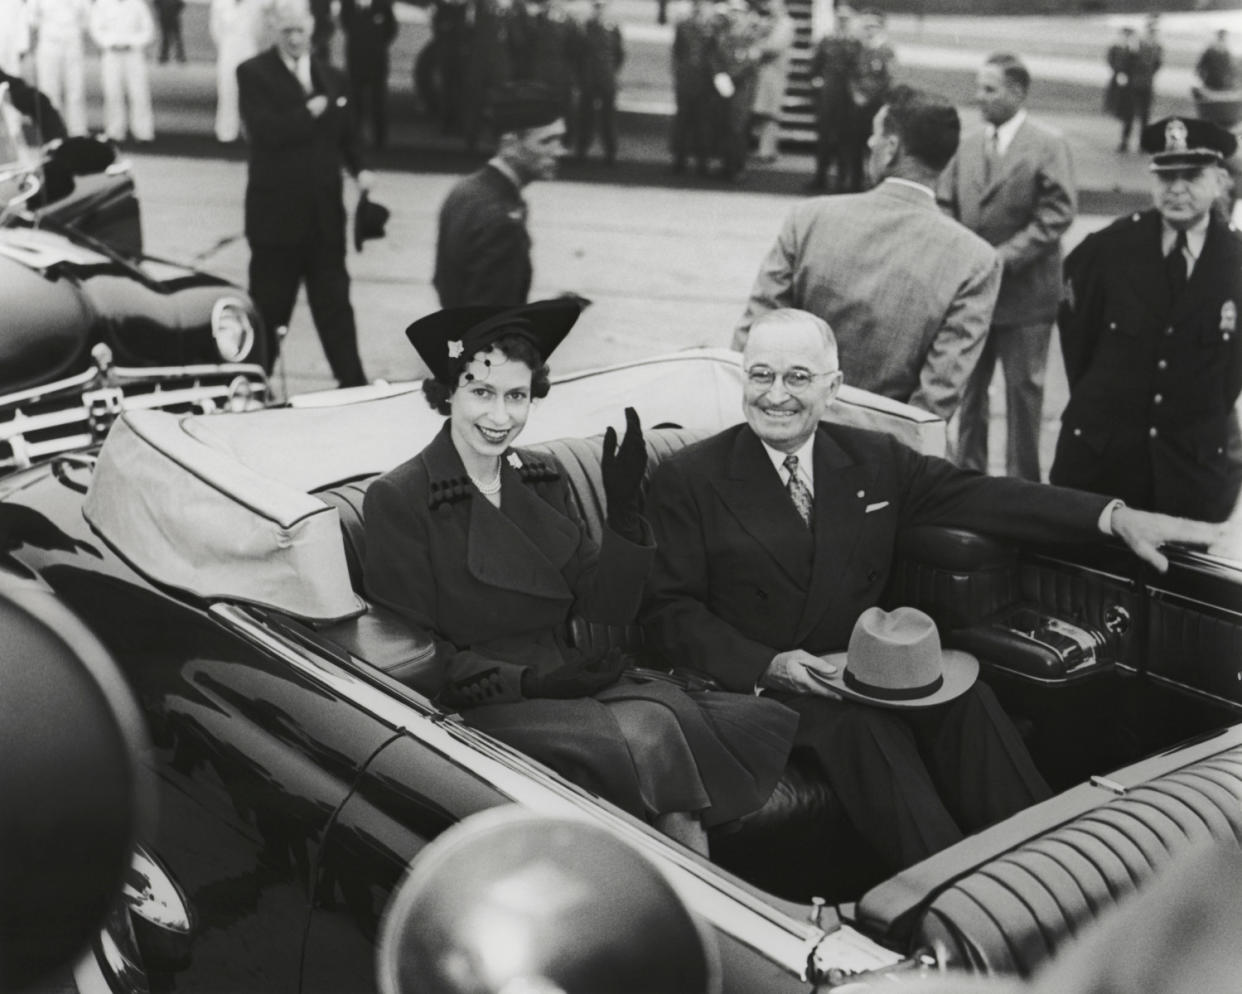 Queen Elizabeth II with President Harry Truman in 1951